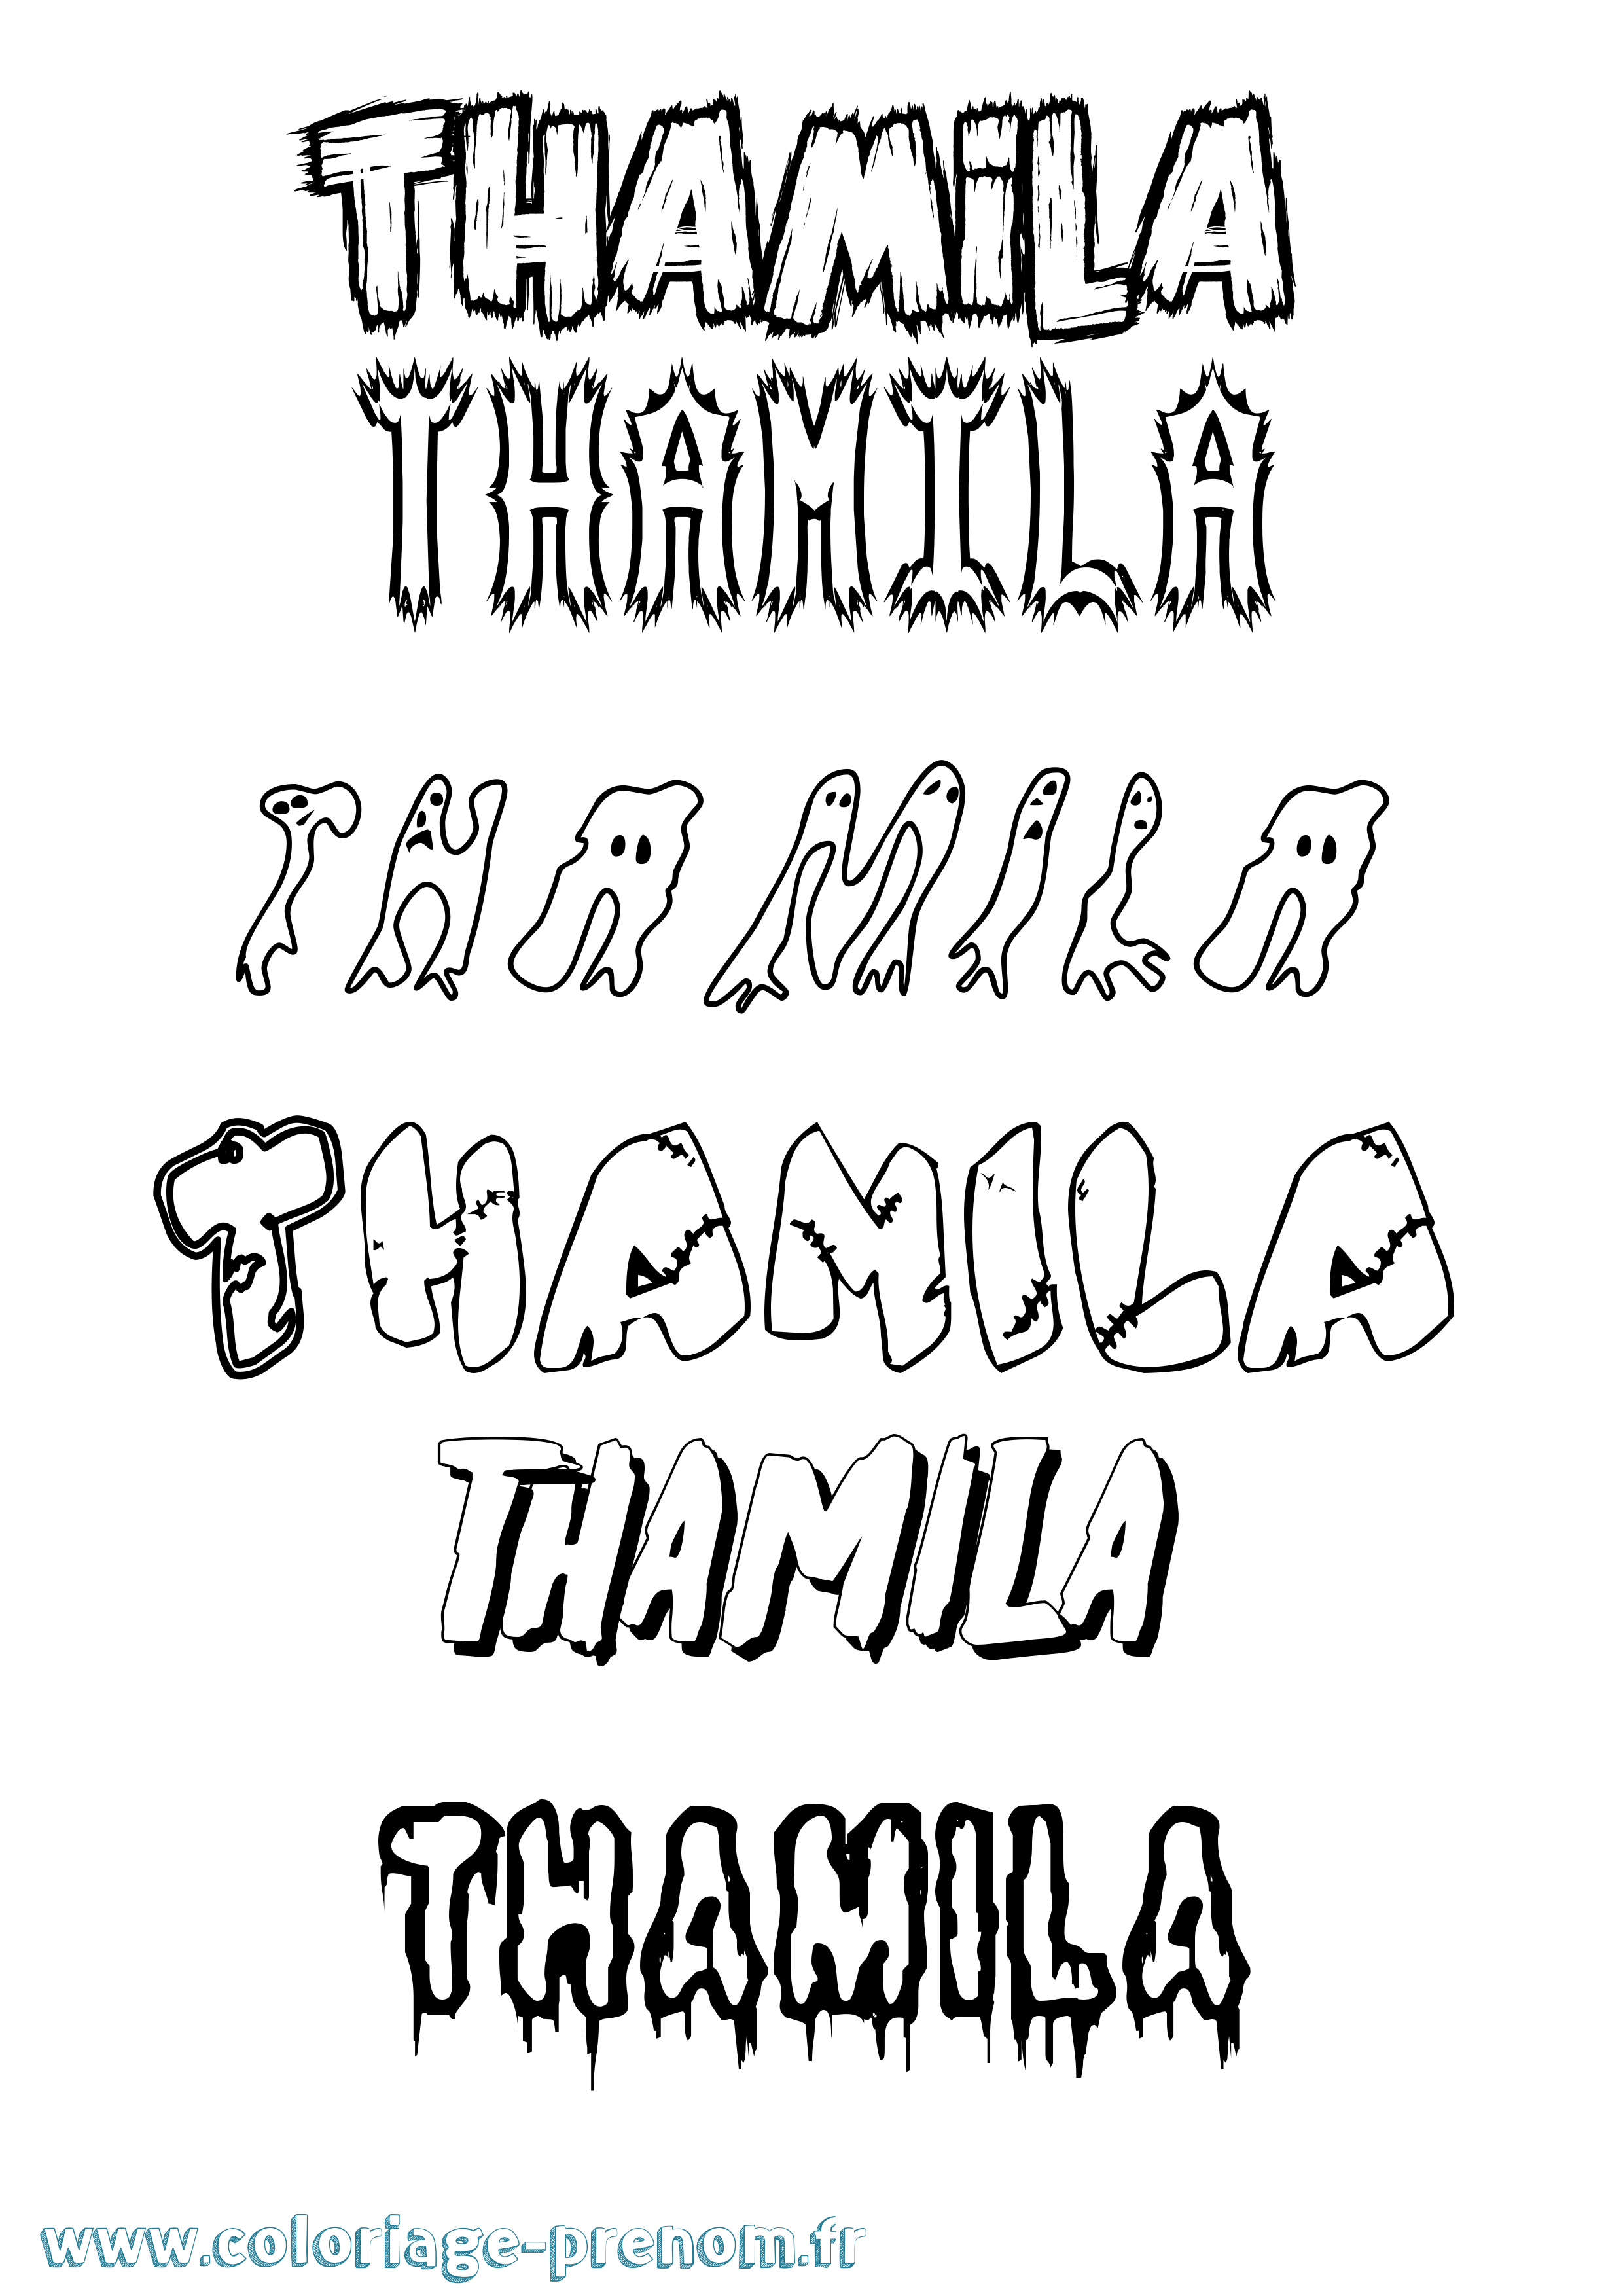 Coloriage prénom Thamila Frisson